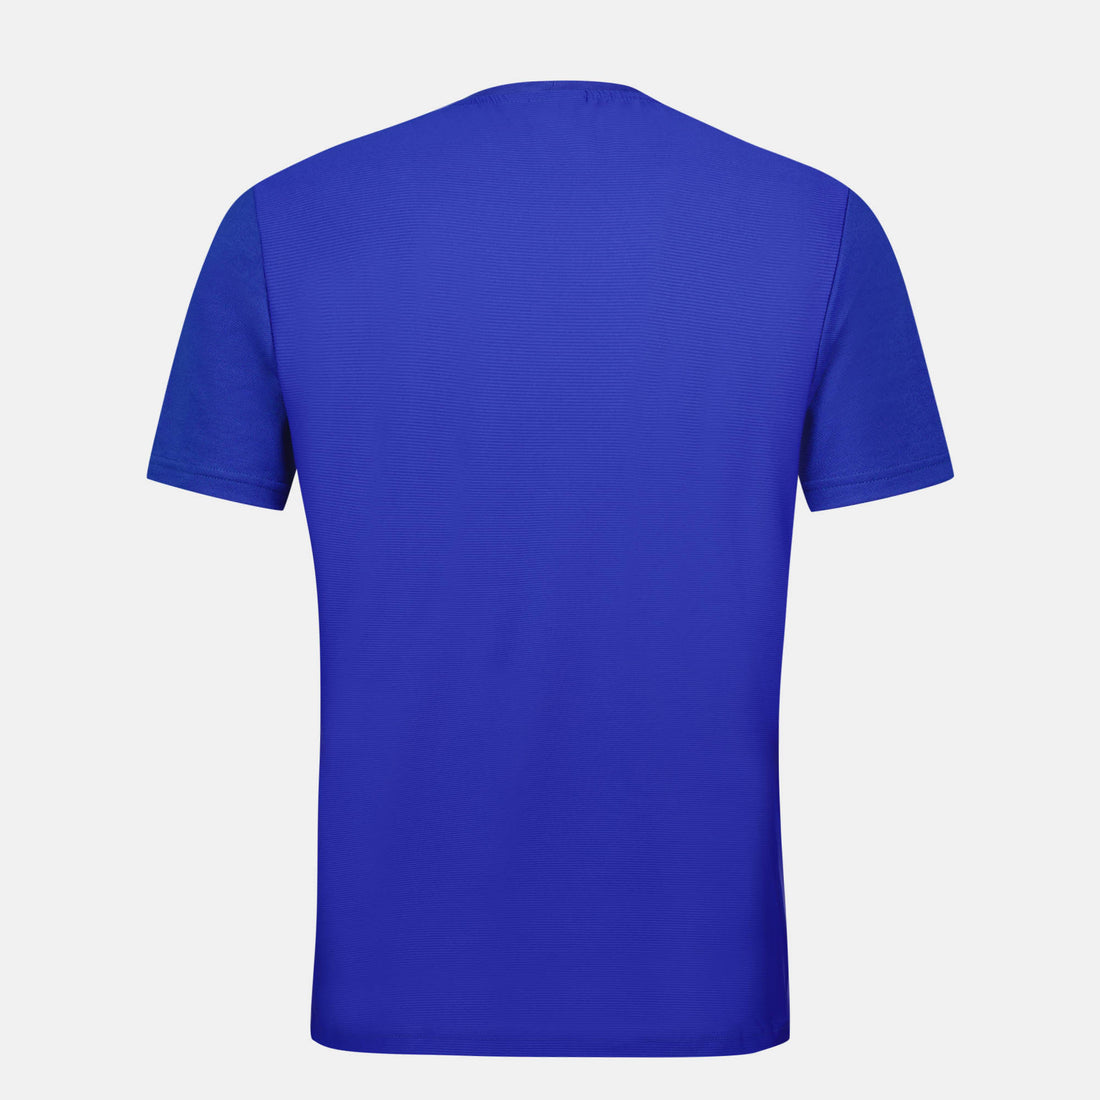 2320132-TENNIS Tee SS N°4 M cobalt | T-shirt Homme